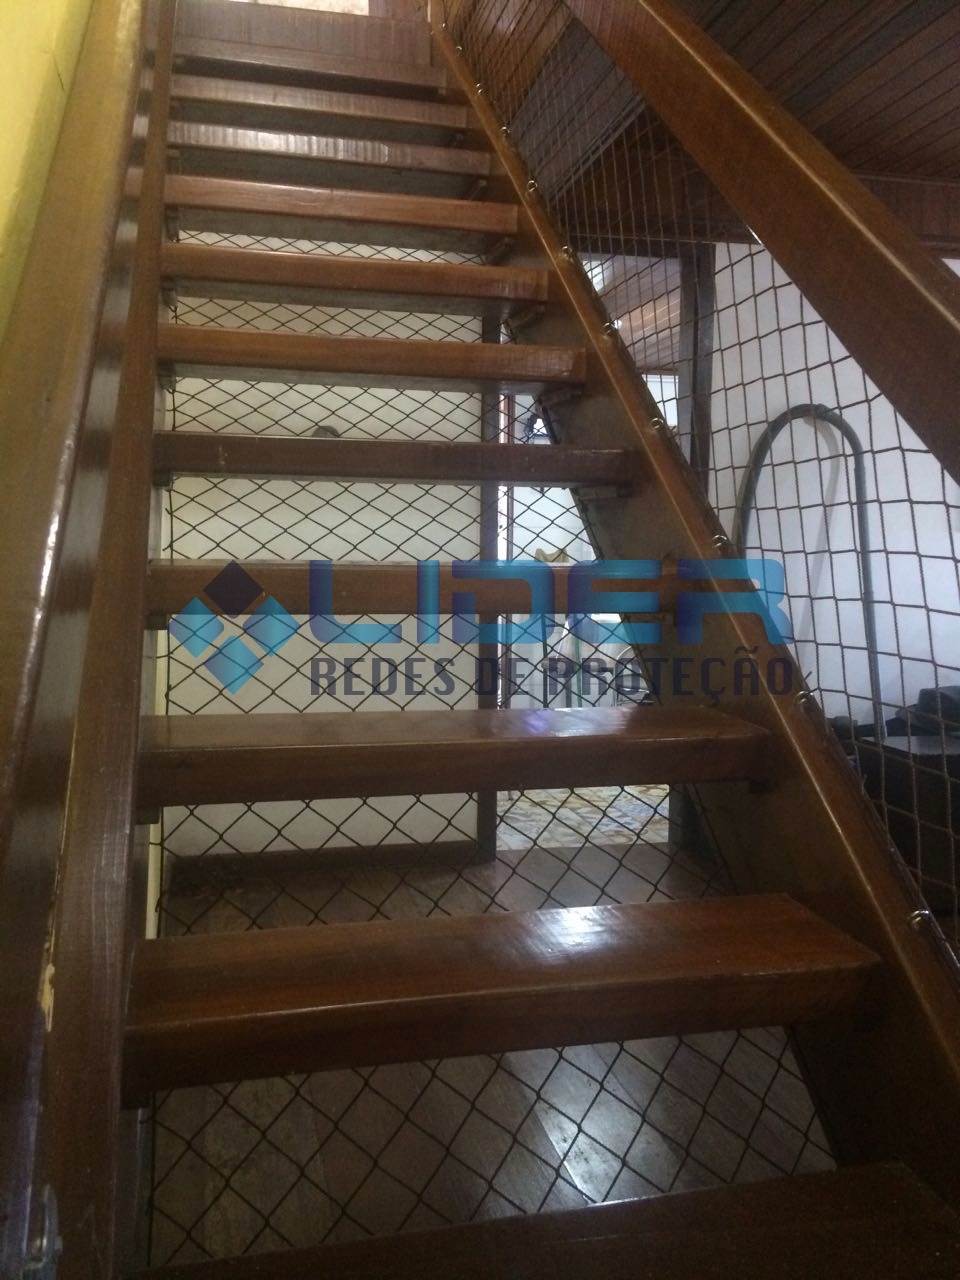 Redes de proteção para escadas e mezaninos. - Foto 1